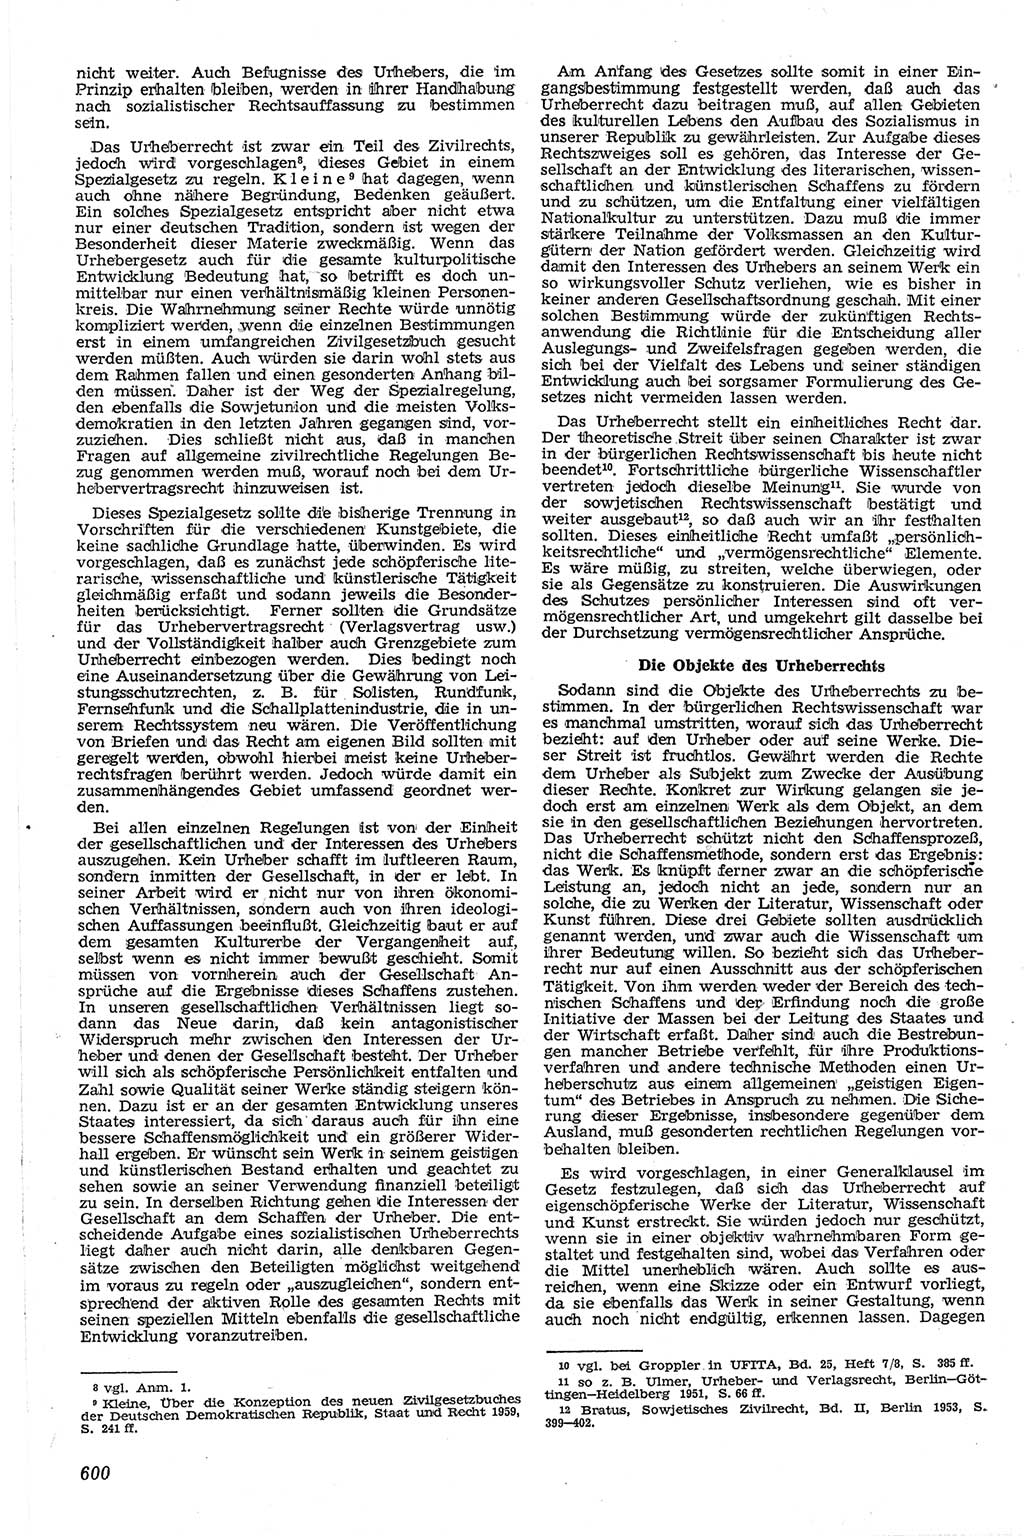 Neue Justiz (NJ), Zeitschrift für Recht und Rechtswissenschaft [Deutsche Demokratische Republik (DDR)], 13. Jahrgang 1959, Seite 600 (NJ DDR 1959, S. 600)